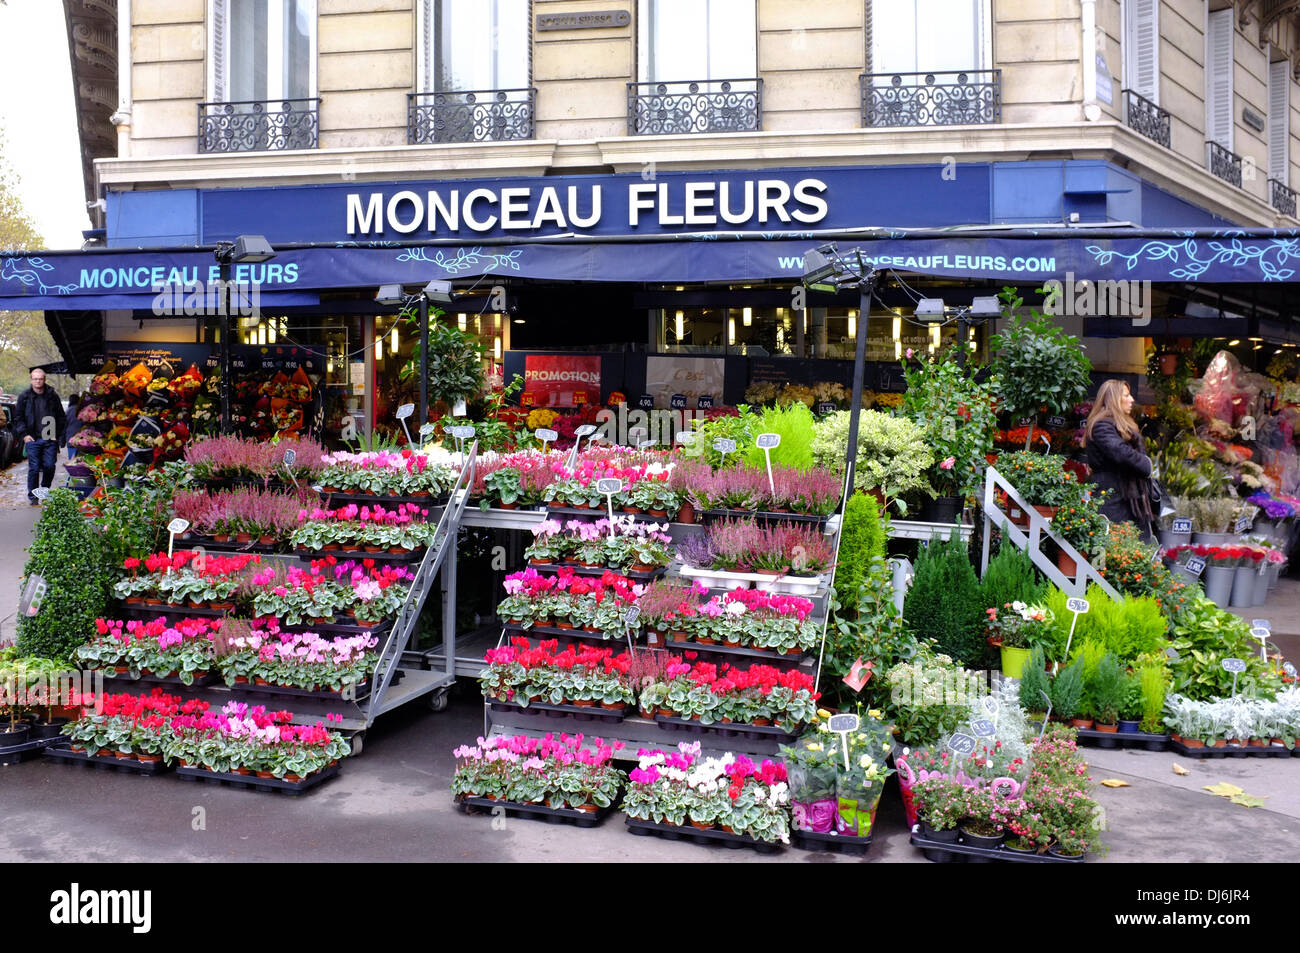 Monceau Fleurs, Flower shop in Paris, France Stock Photo